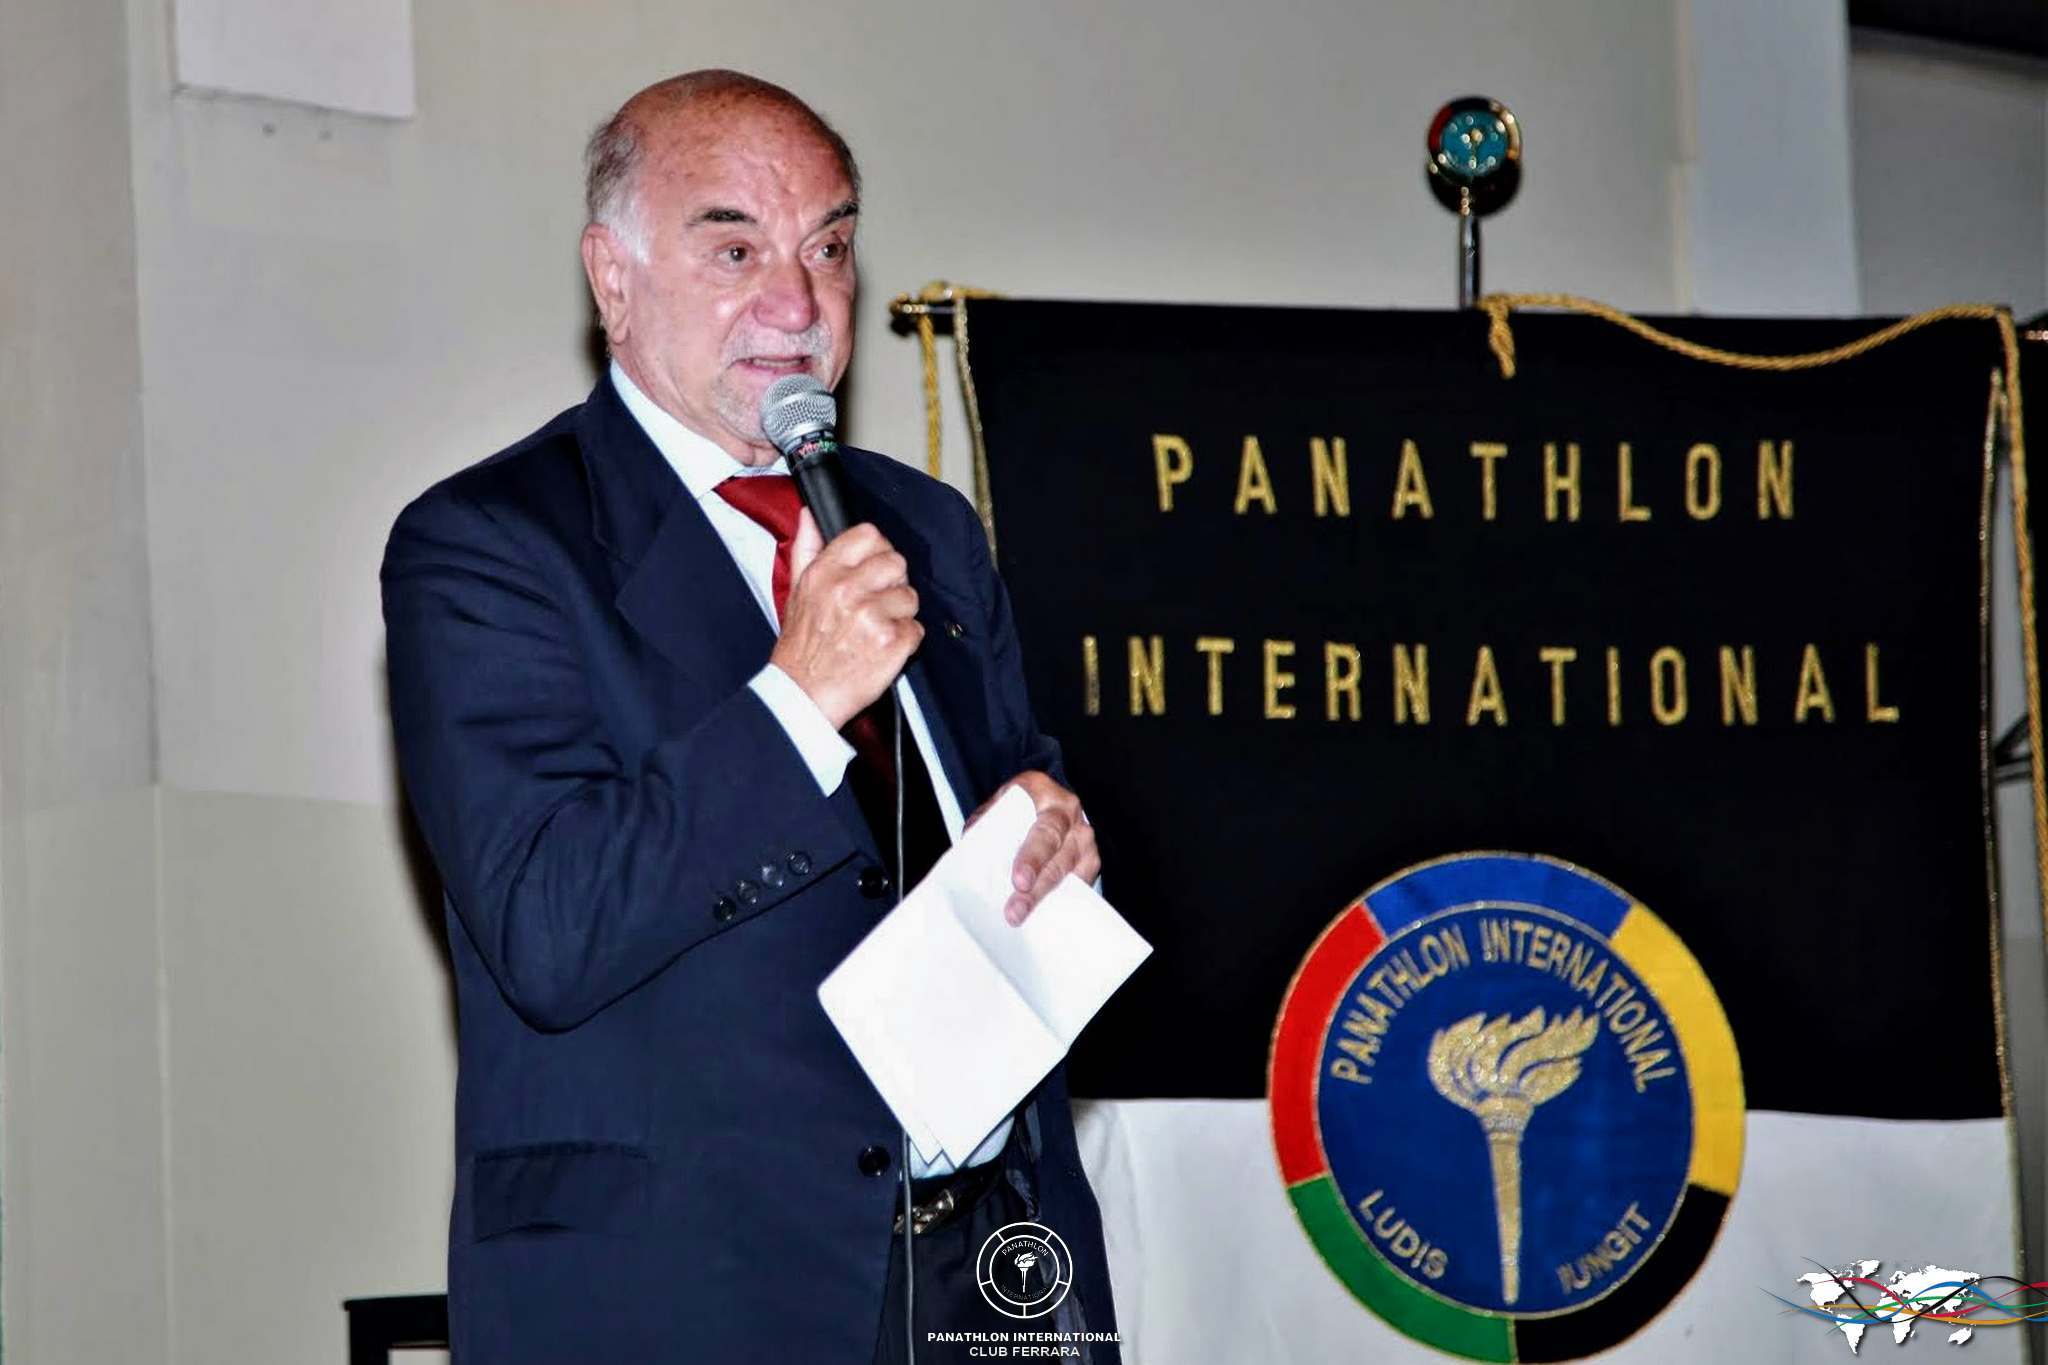 Il Governatore Panathlon Area 5 Emilia-Romagna e Marche Lucio Montone